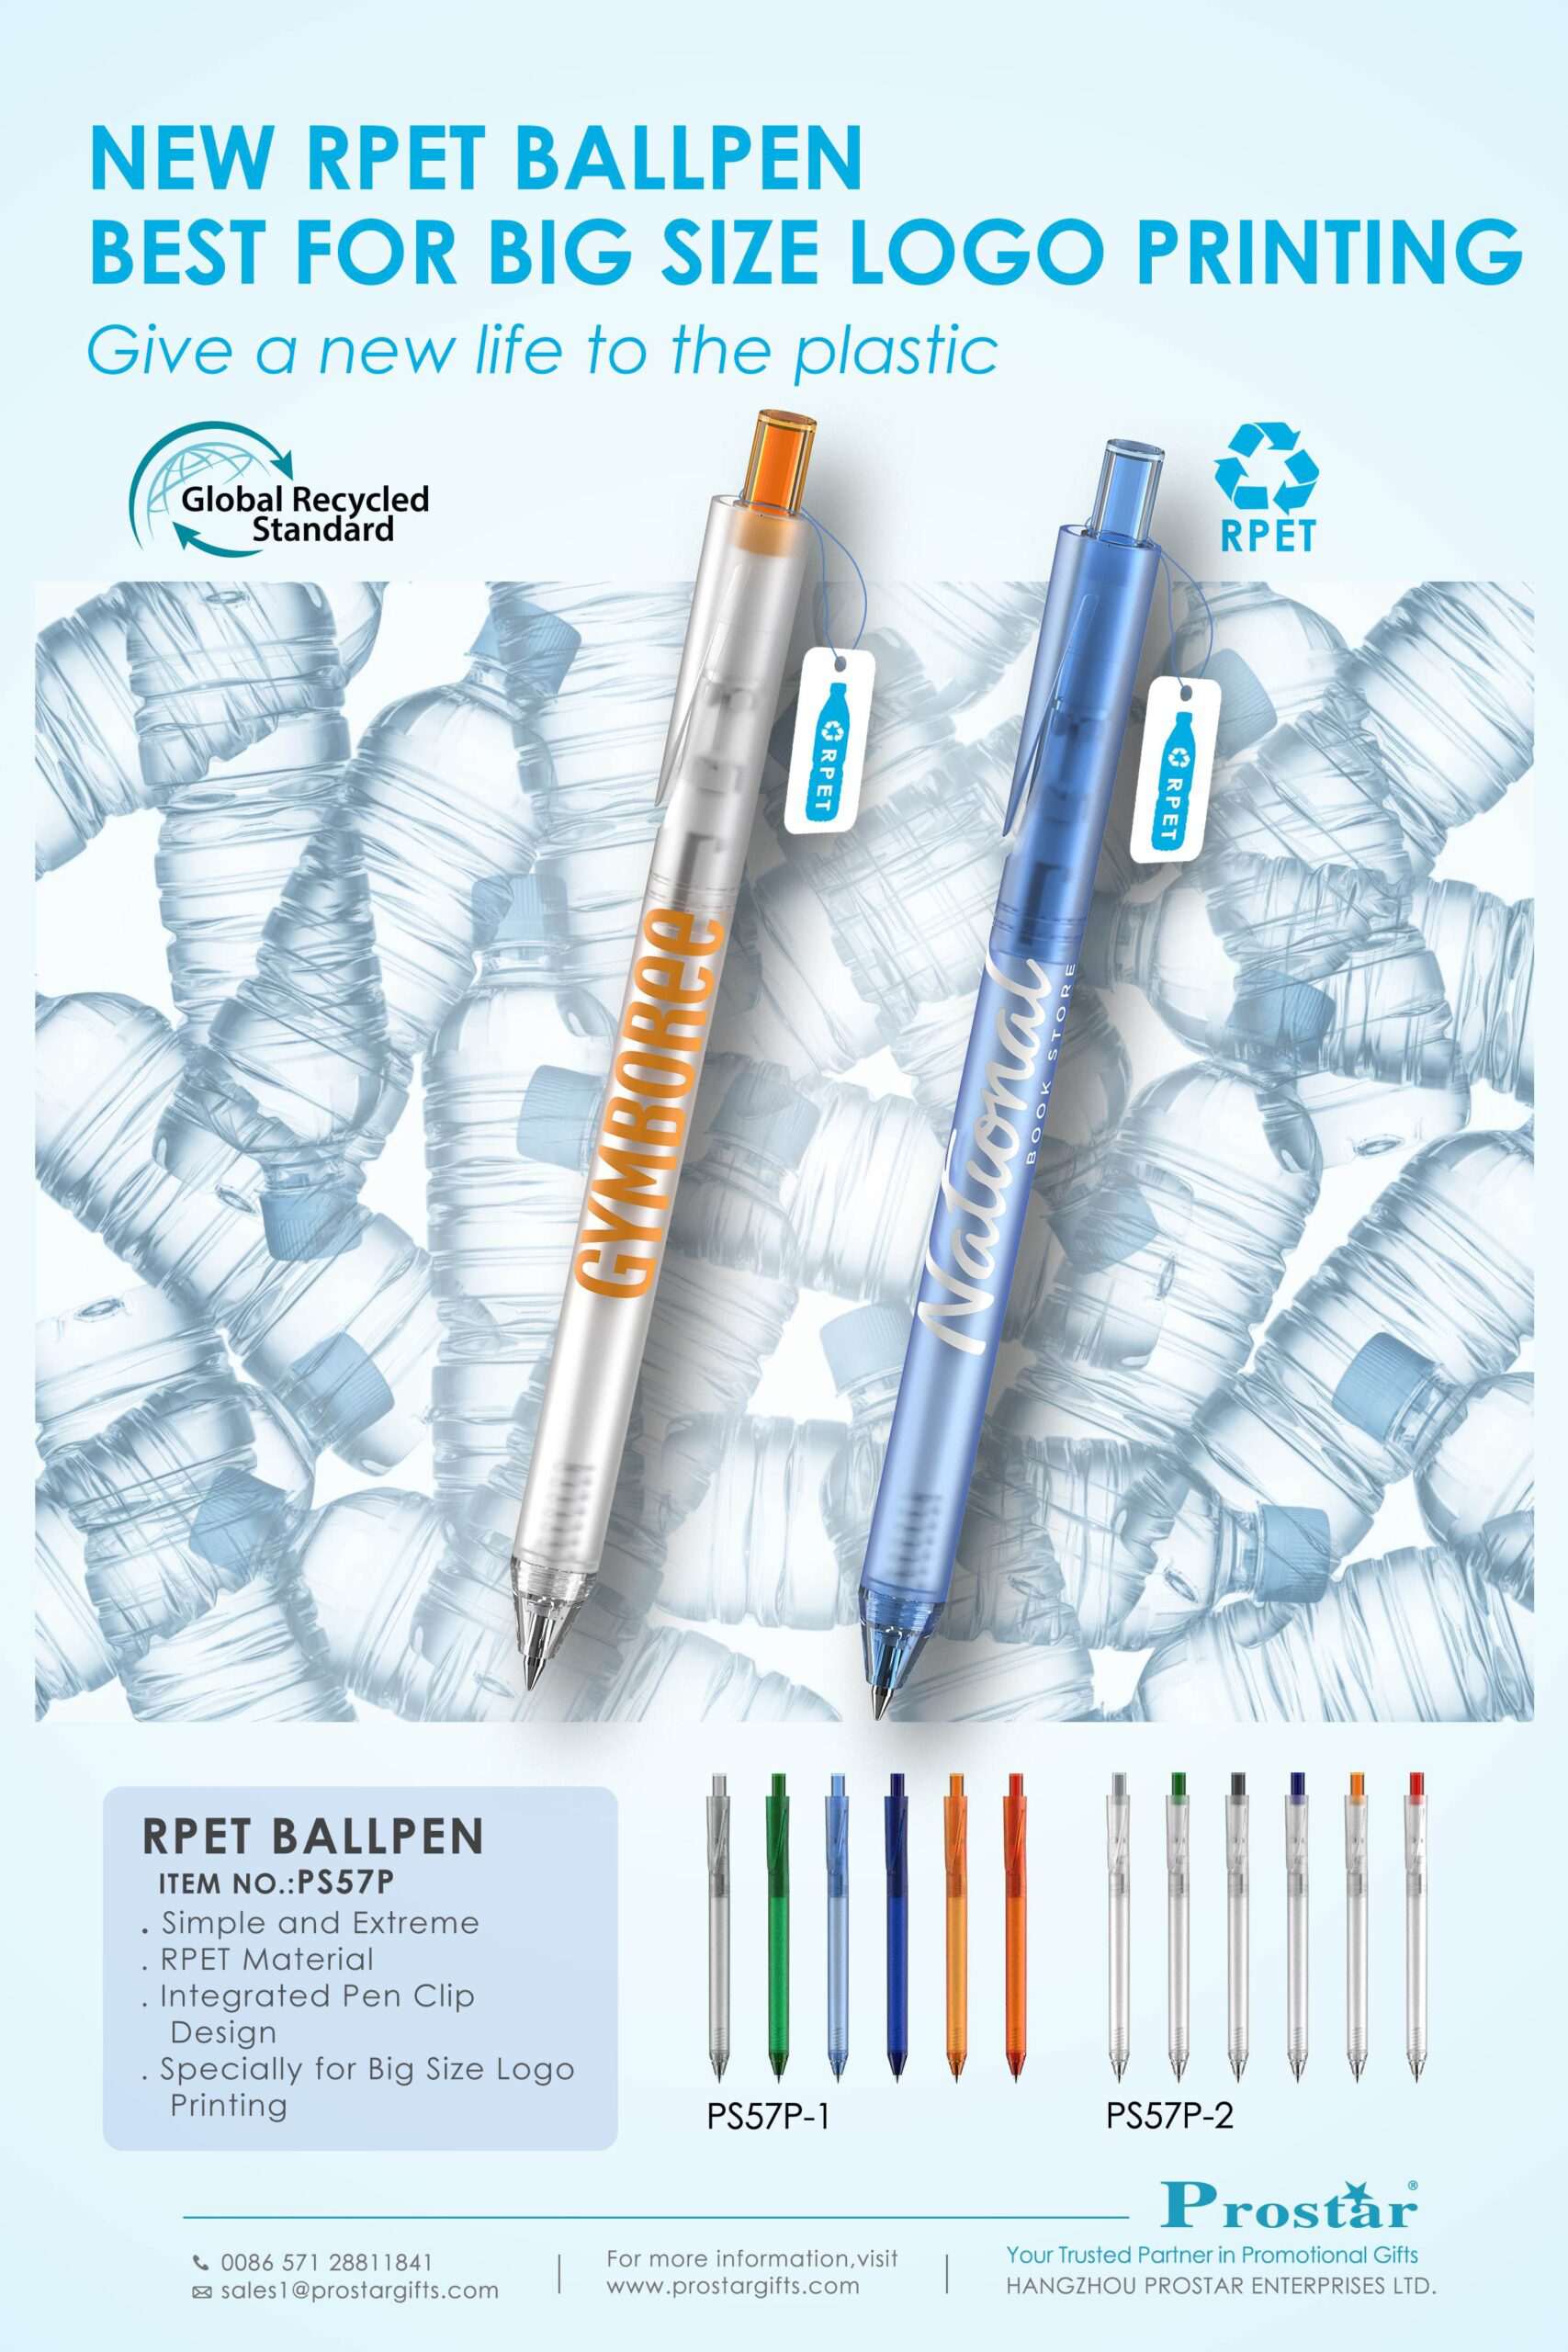 Crestar Limited :: Ball Point Pen - Medium